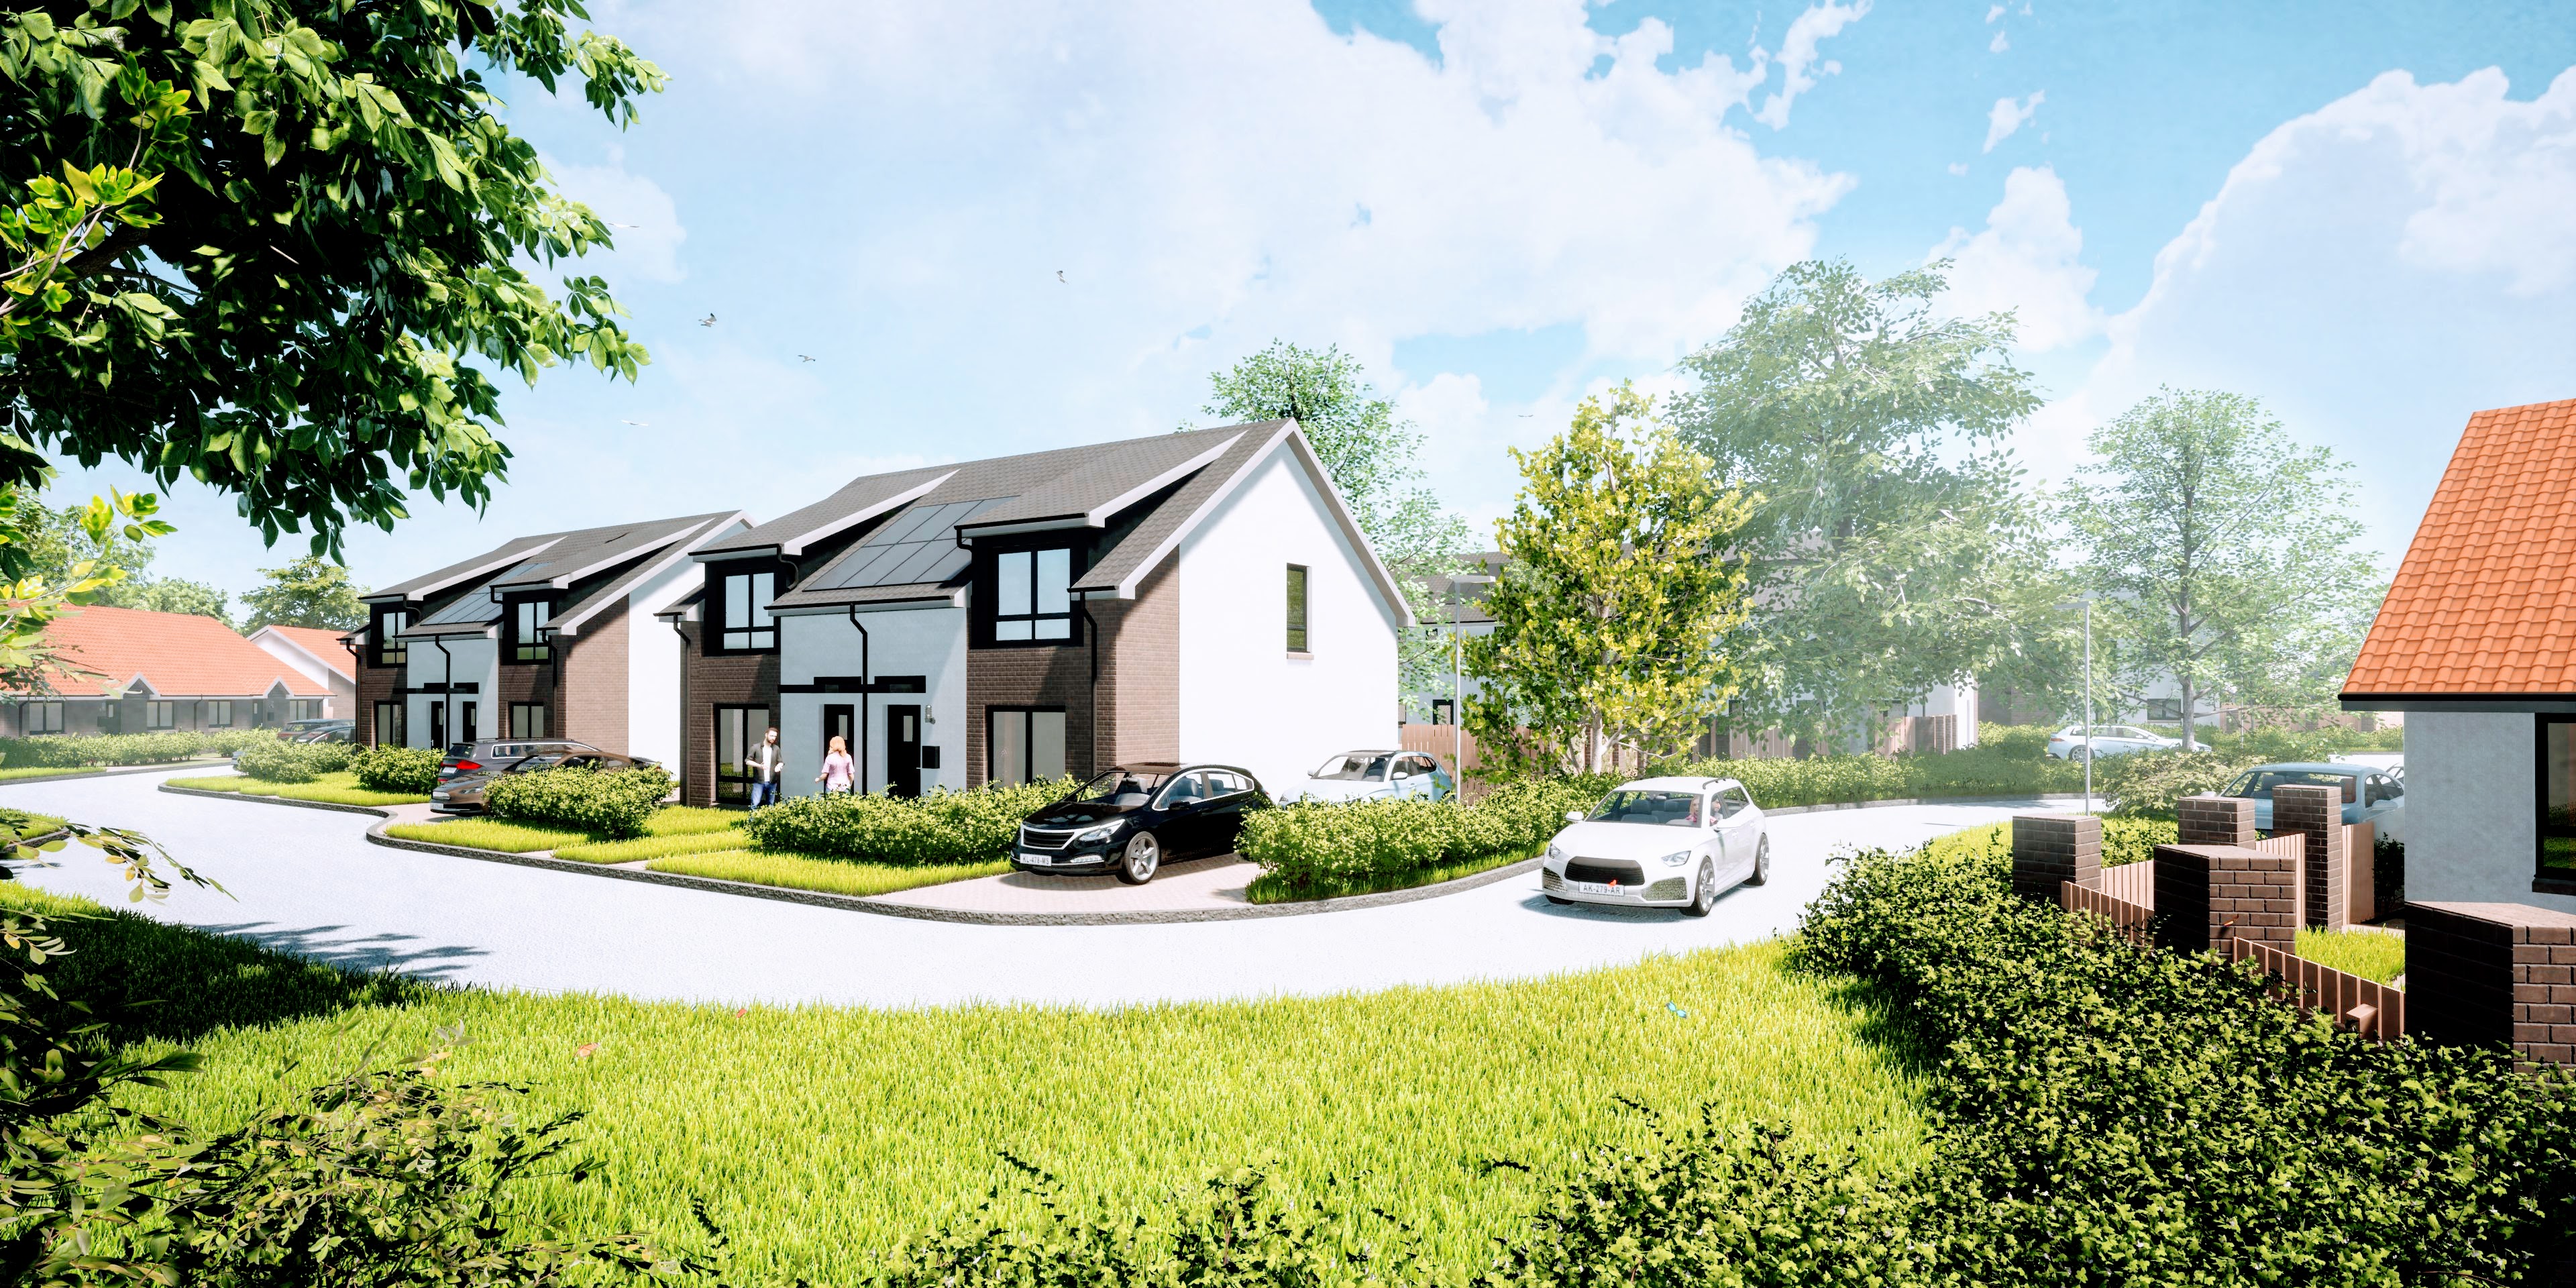 Kingdom Housing Association starts work on £6.9m Passivhaus development in Fife